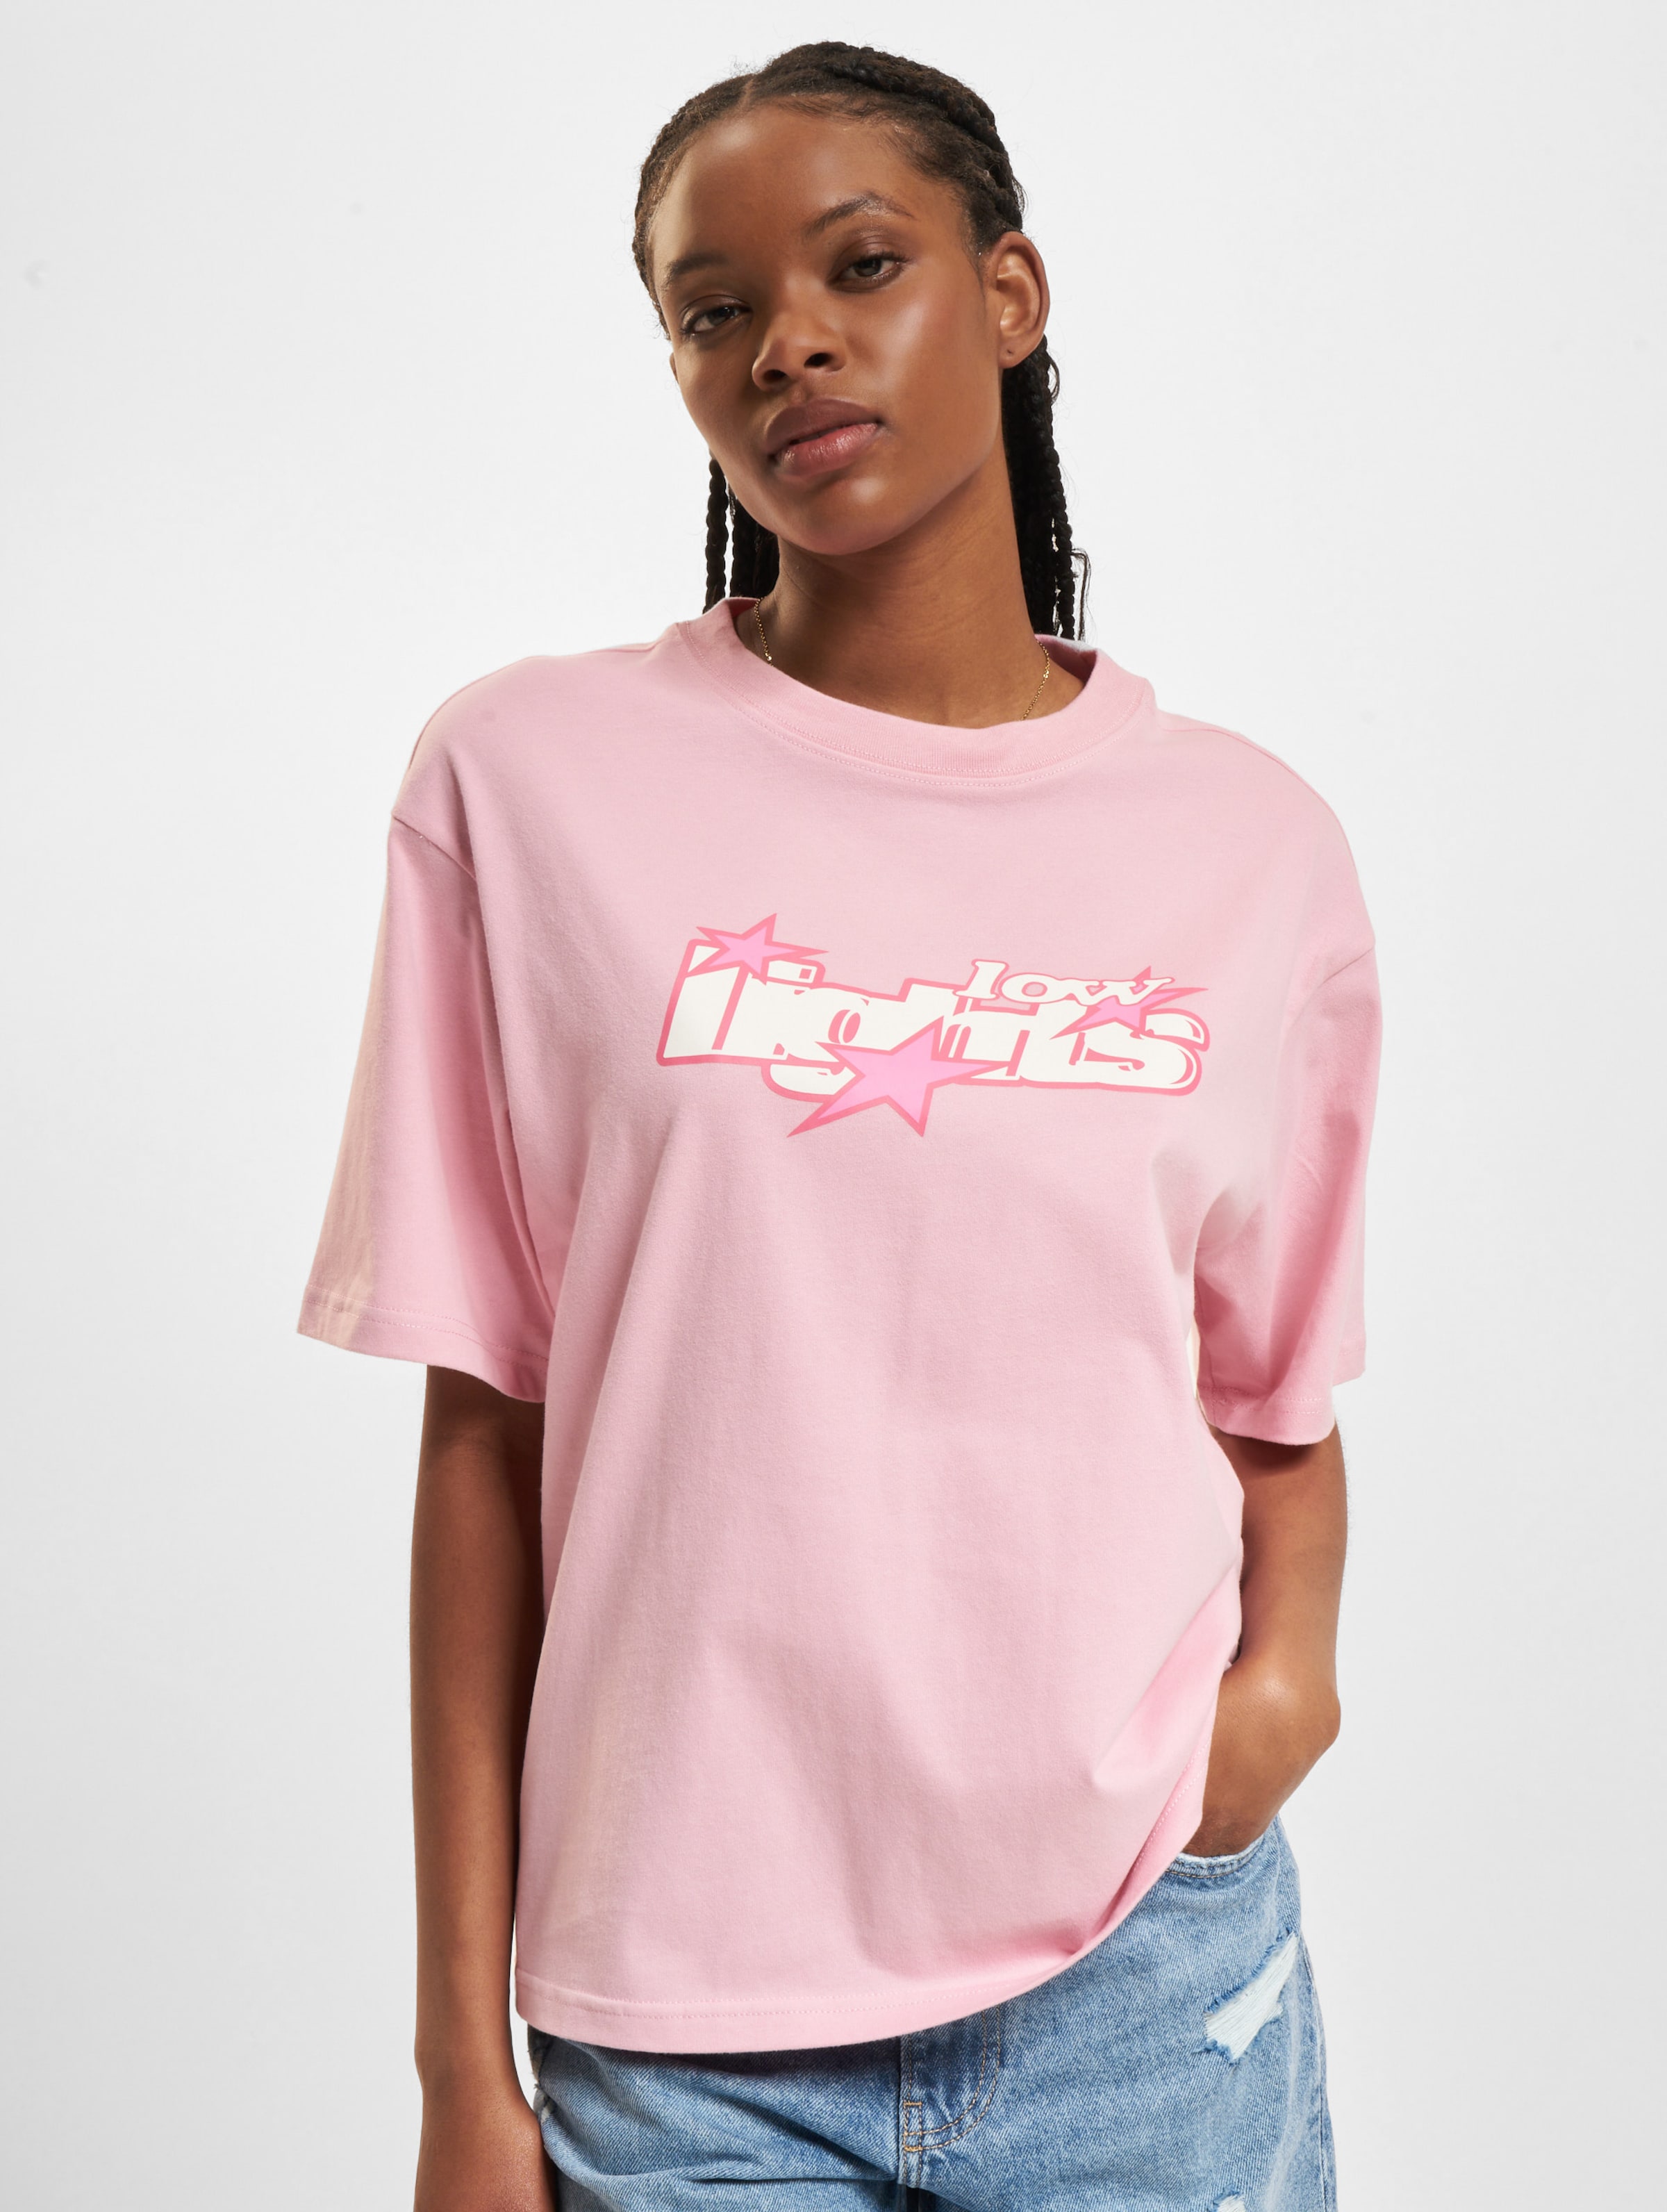 Low Lights Studios Lucky 7 Woman T-Shirt Frauen,Unisex op kleur roze, Maat M